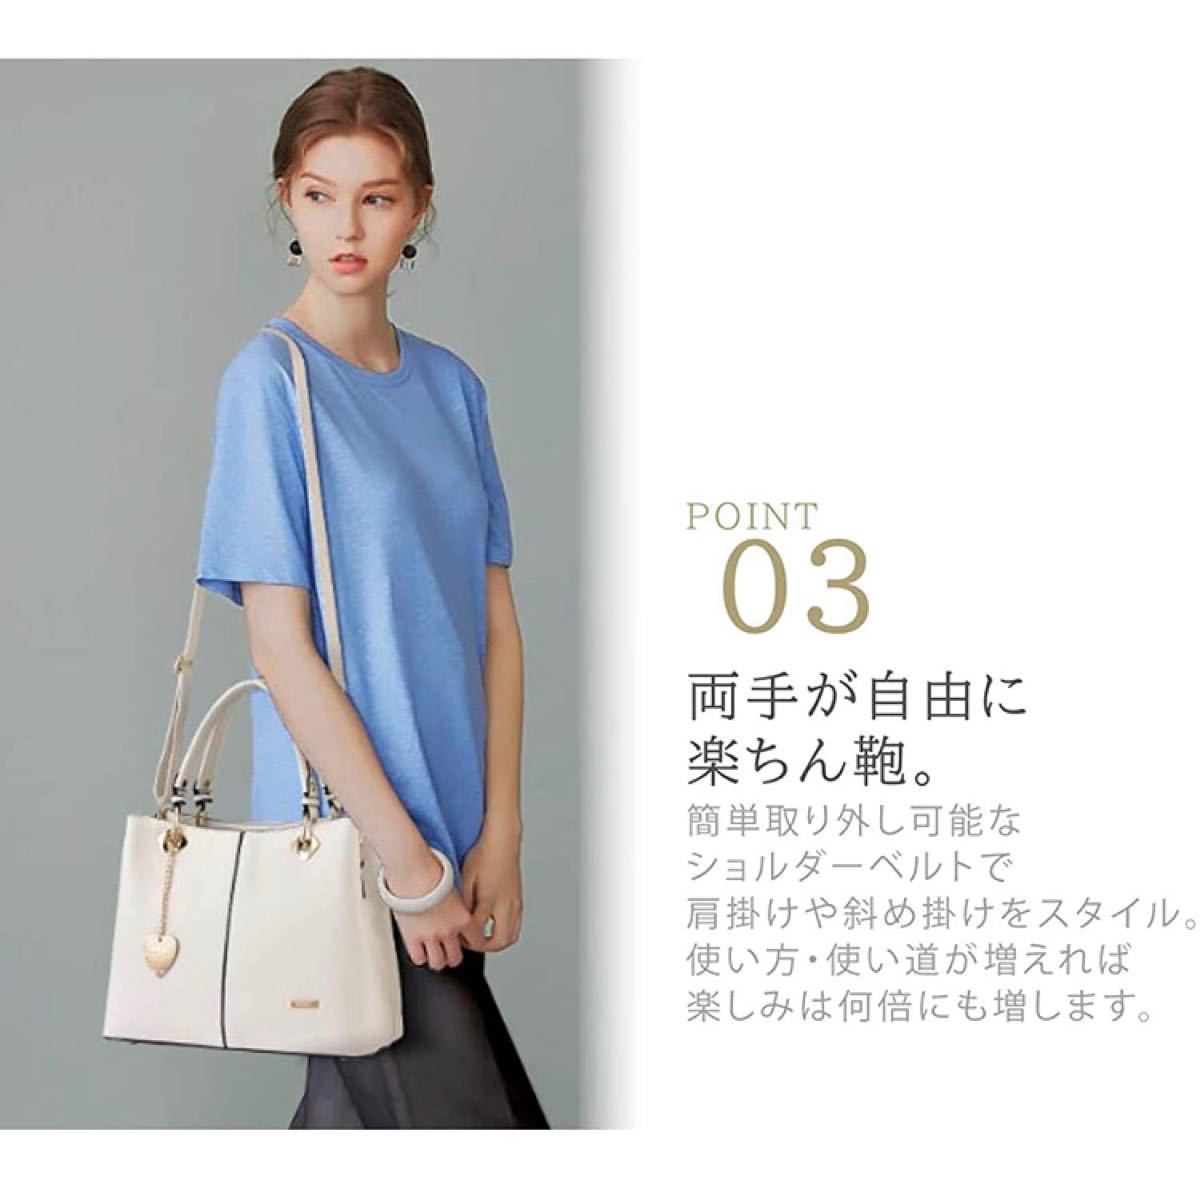 【本日限定セール】海外ブランド 韓国ファッション ハンドバッグ 肩掛け 2way レディースバッグ 優雅 セレブ ピンク